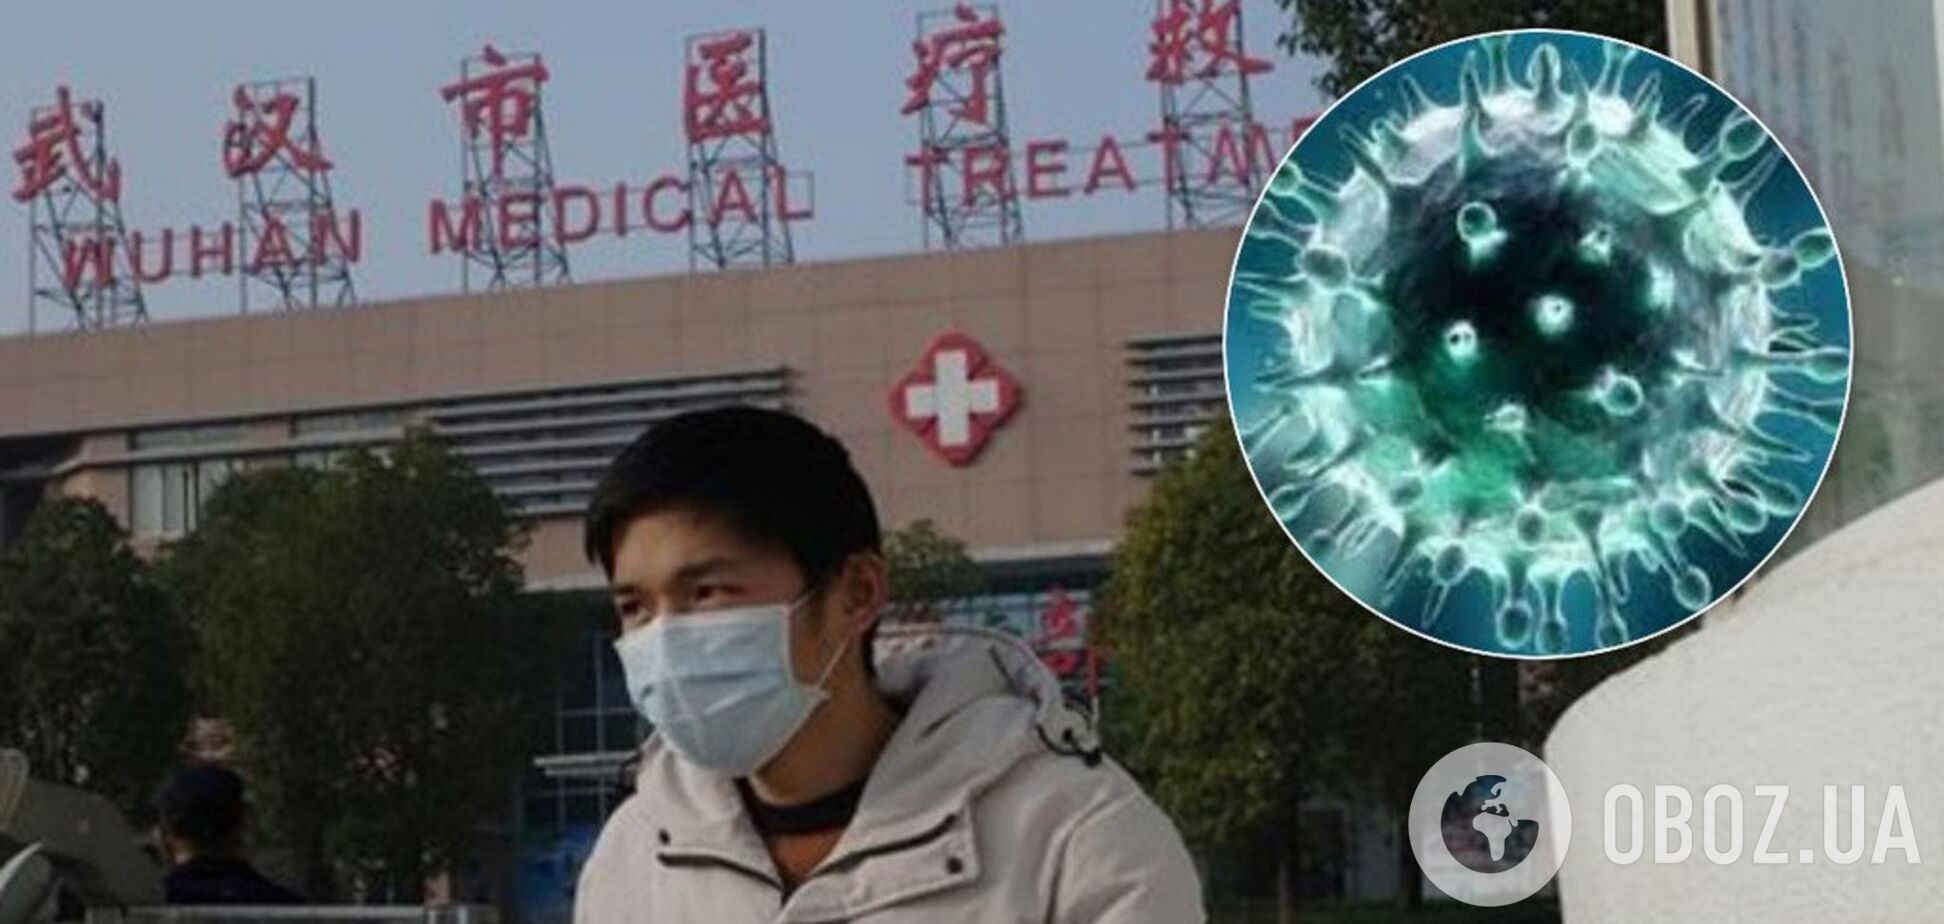 Уже убивает людей: в мире забили тревогу из-за опасного китайского вируса